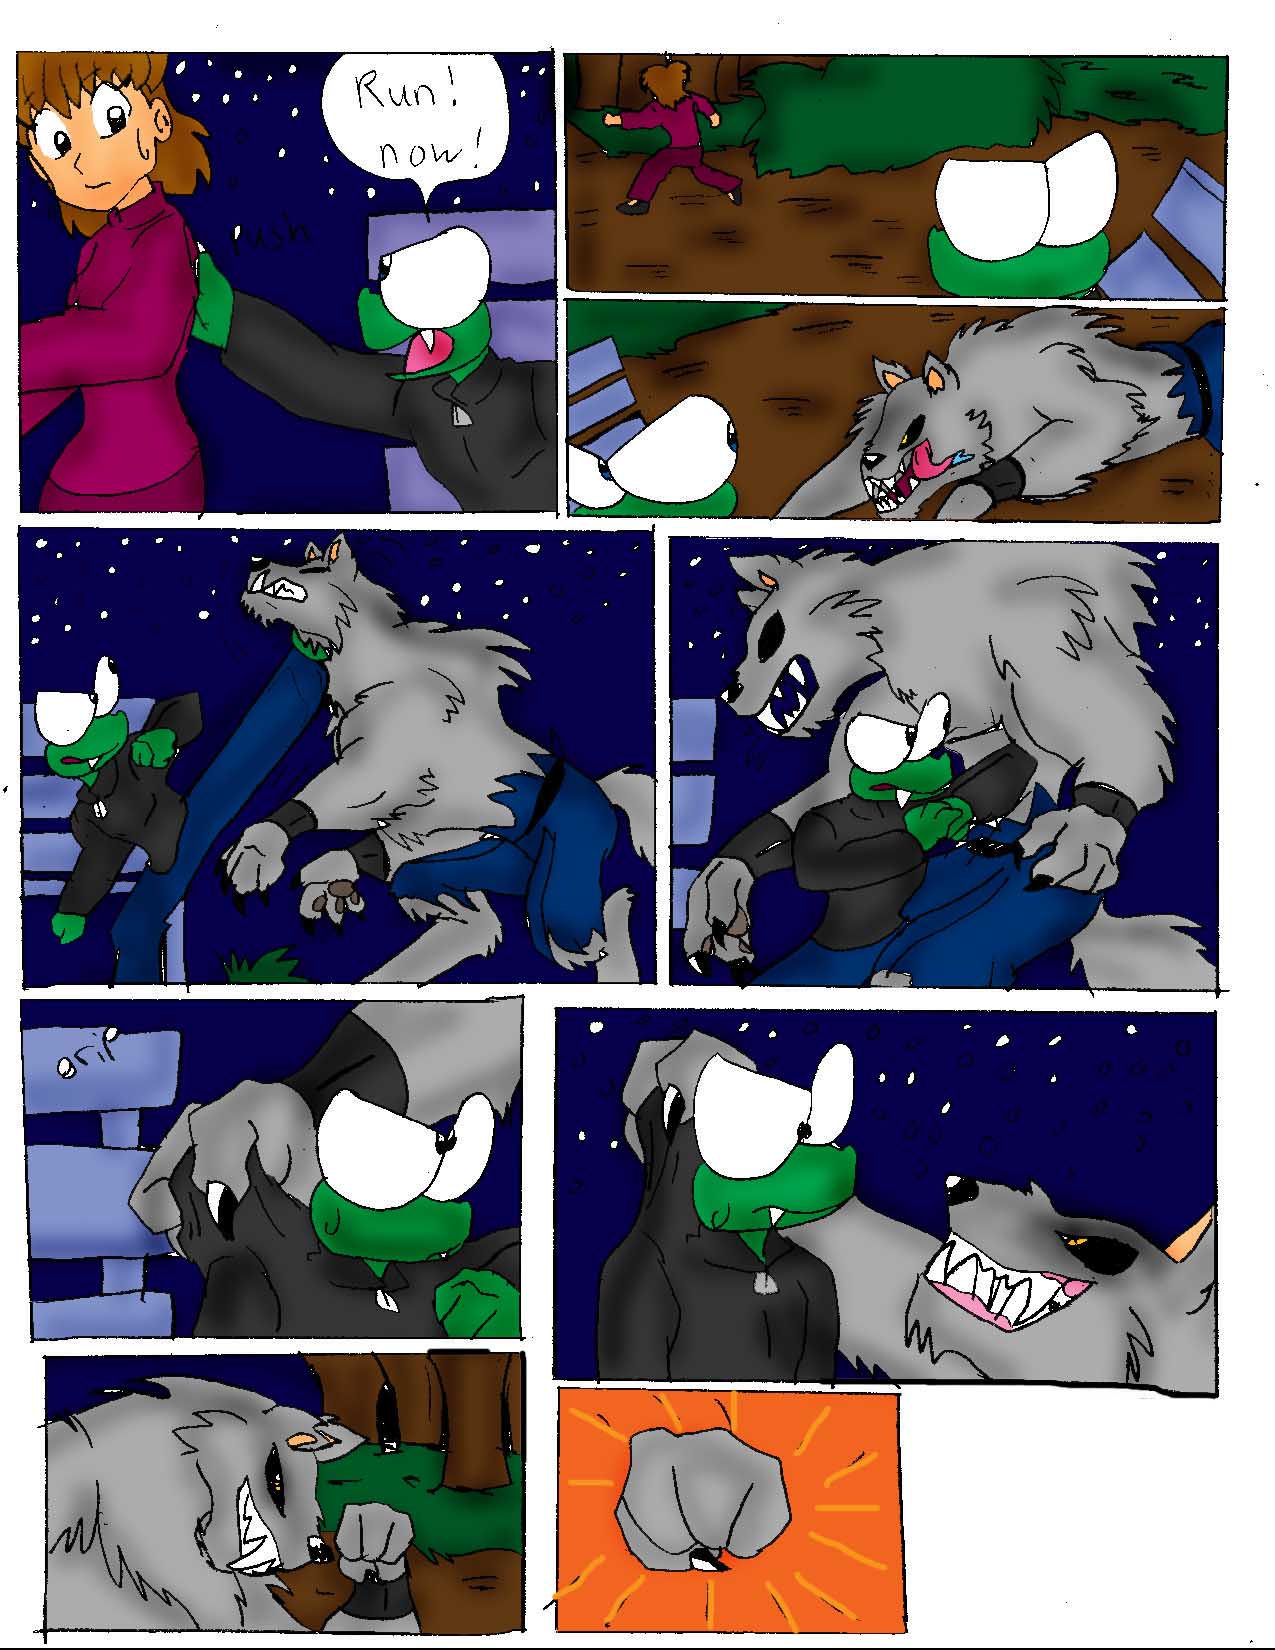 Meet Bruno comic#3 by crocdragon89